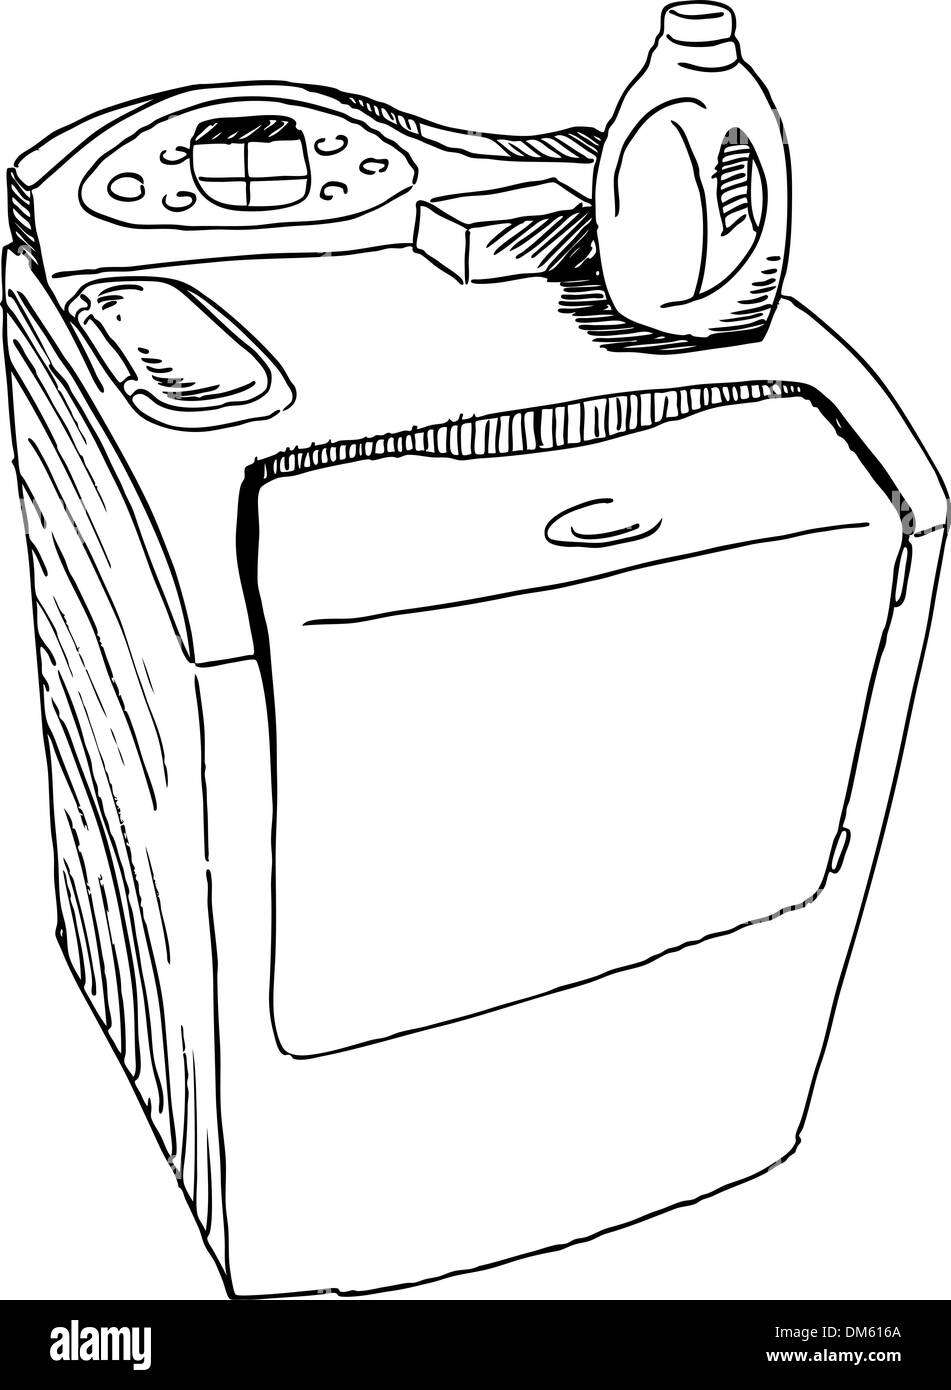 Рисование стиральная машина